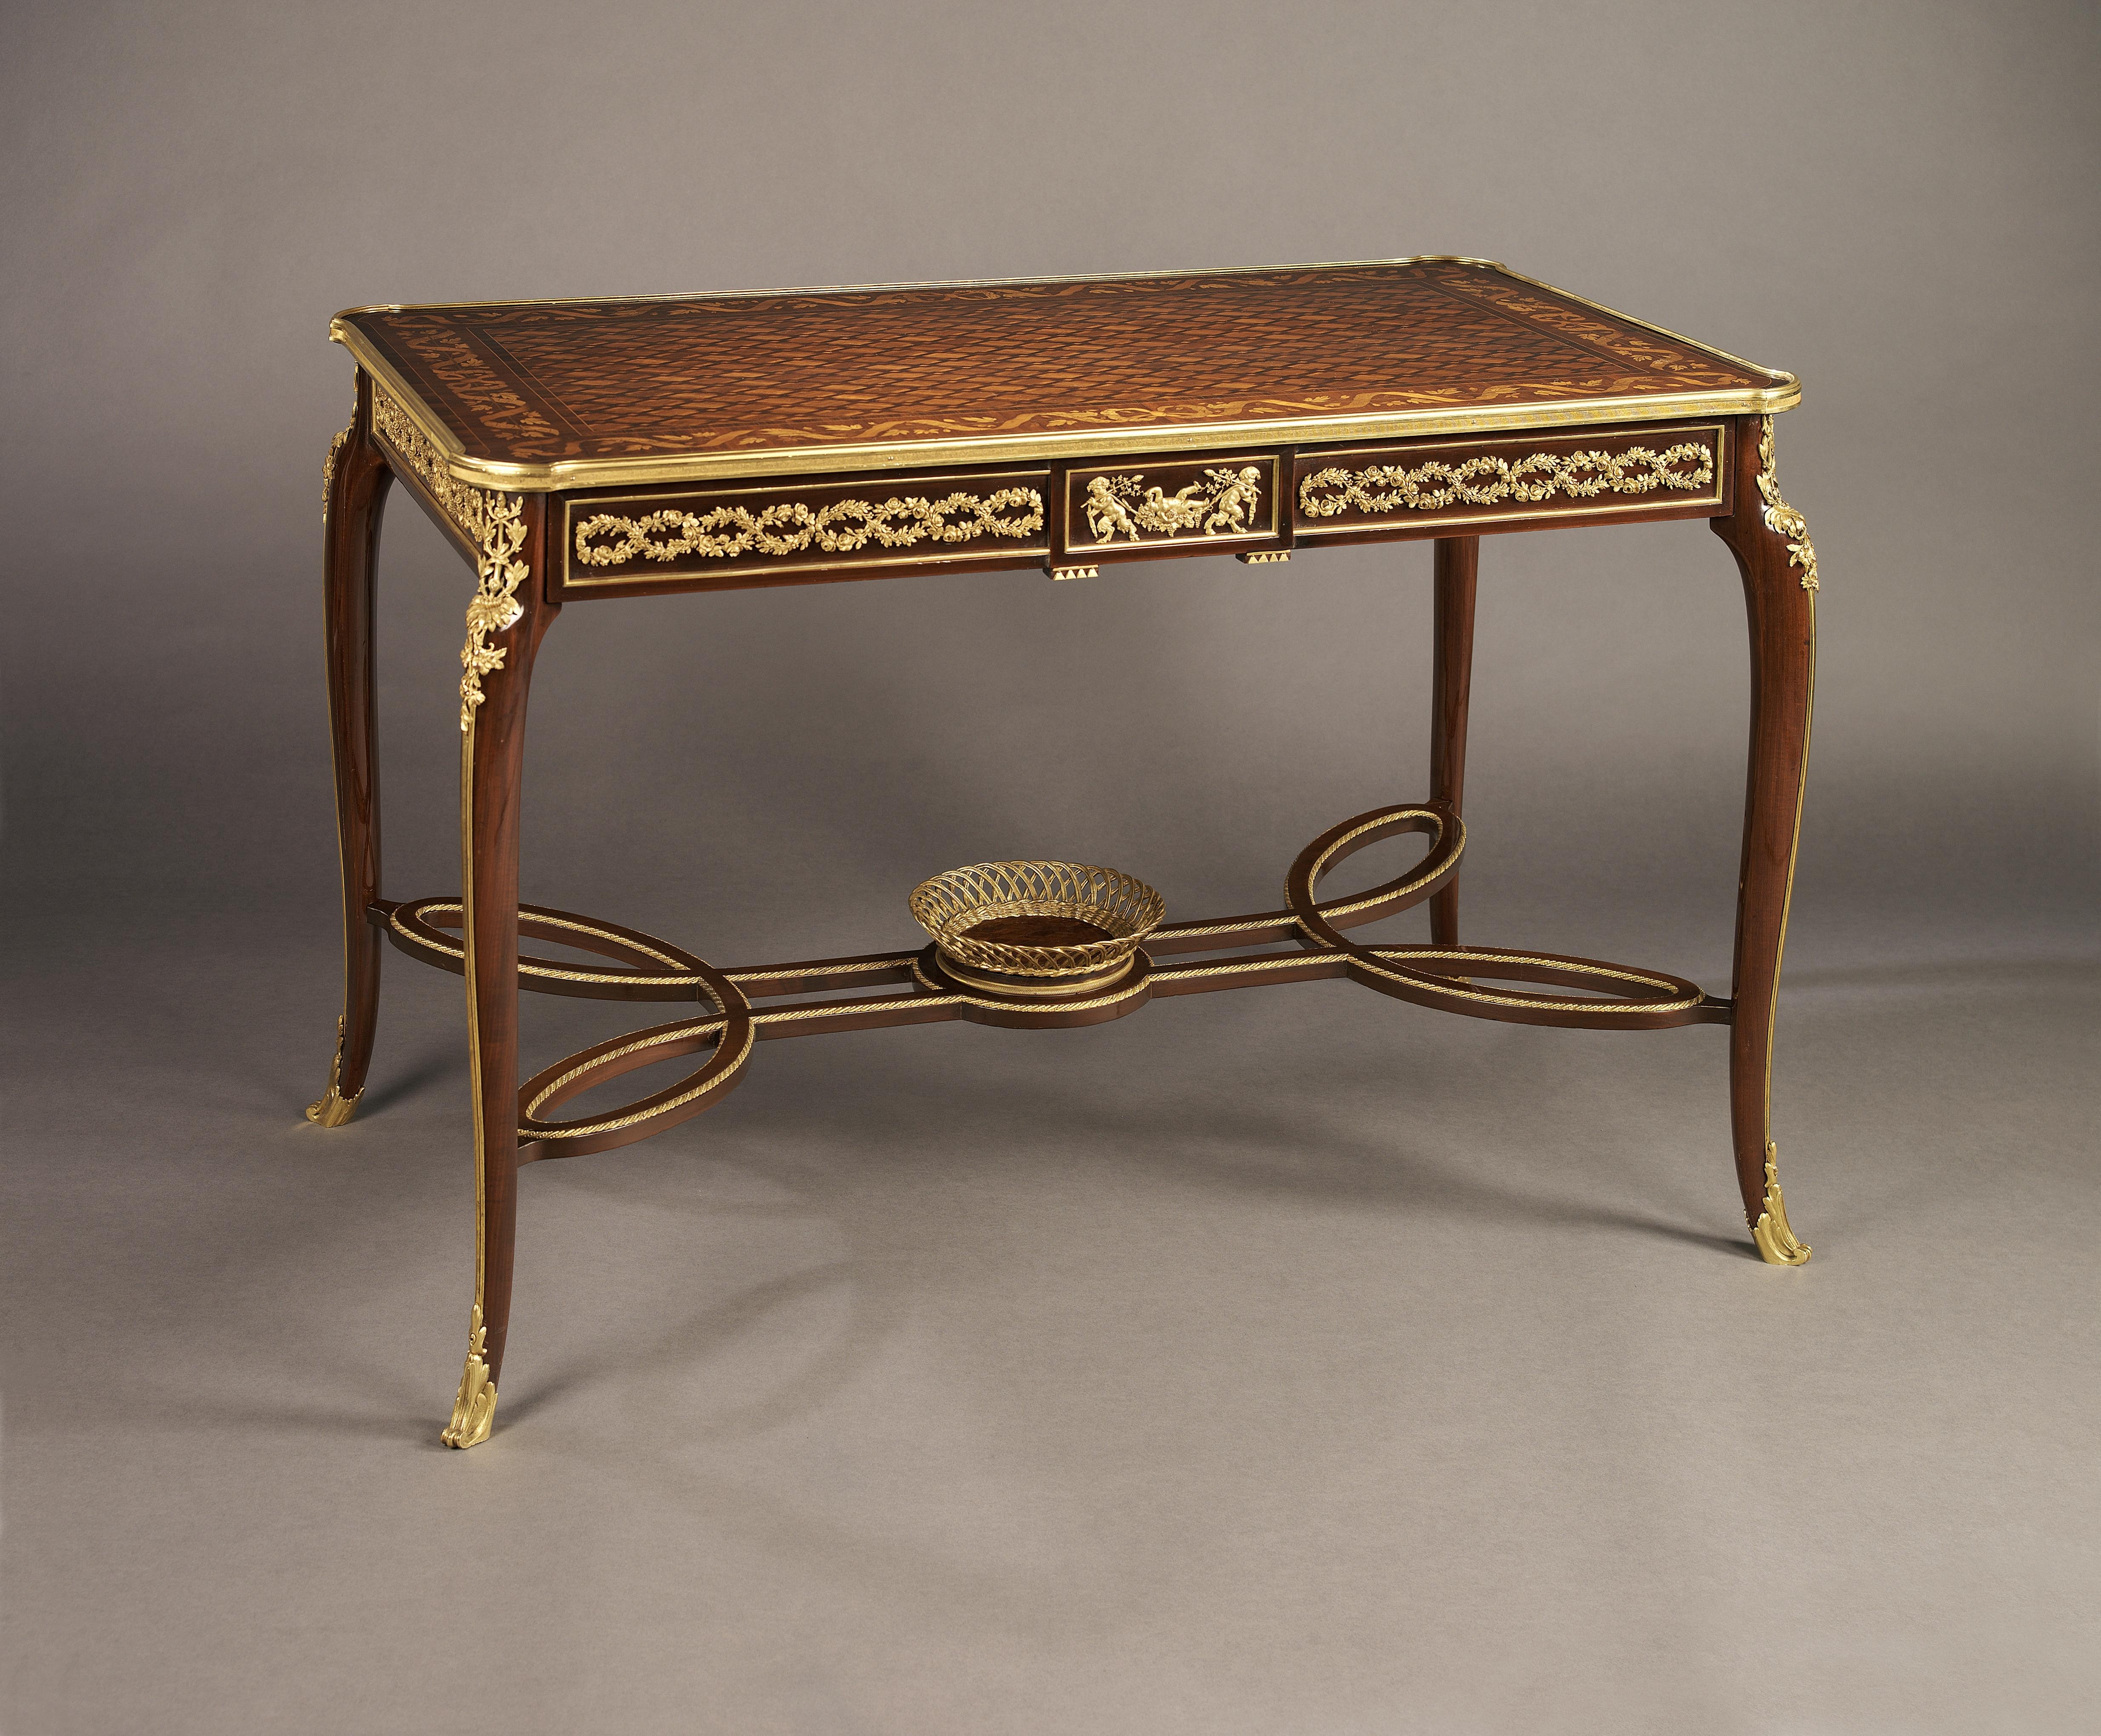 Table centrale en acajou et marqueterie de style Louis XVI avec des montures en bronze doré, attribuée à François Linke.

Français, datant d'environ 1890.

Cette table en marqueterie fine présente une frise avec un méandre feuillagé en bronze